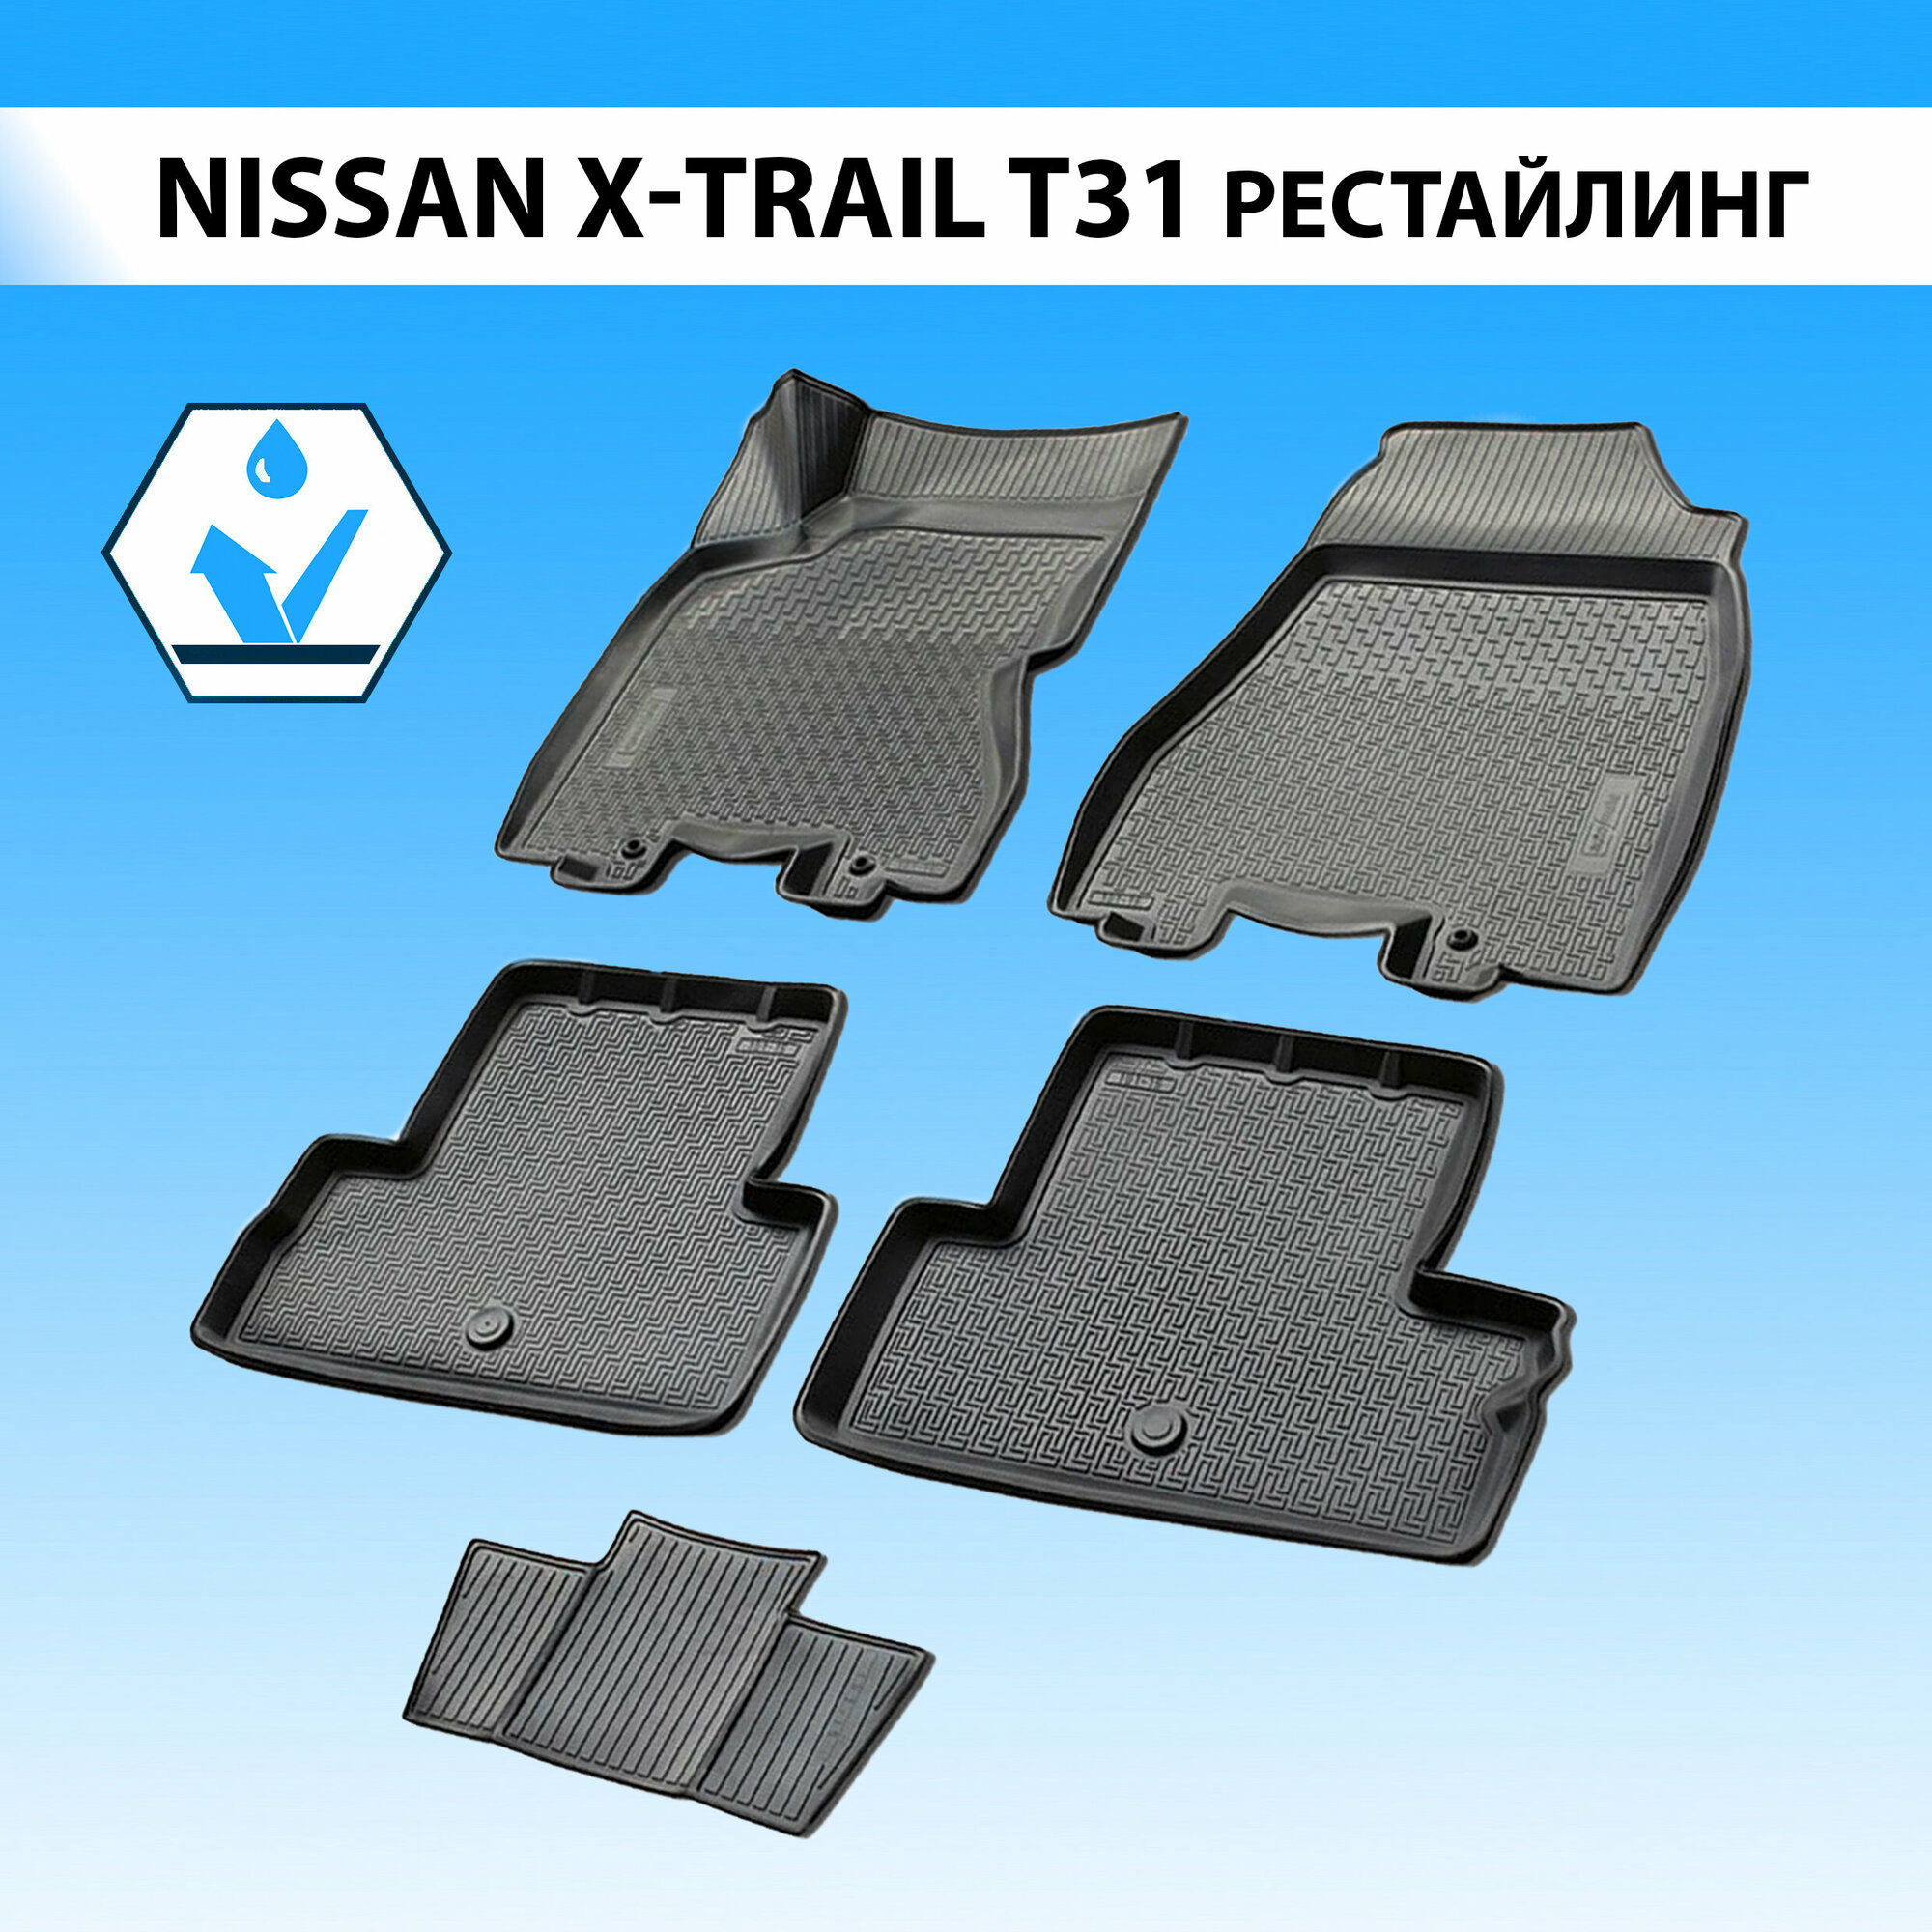 Комплект ковриков в салон RIVAL 14109002 для LADA 2121, Nissan X-Trail 2011-2015 г., 5 шт. черный